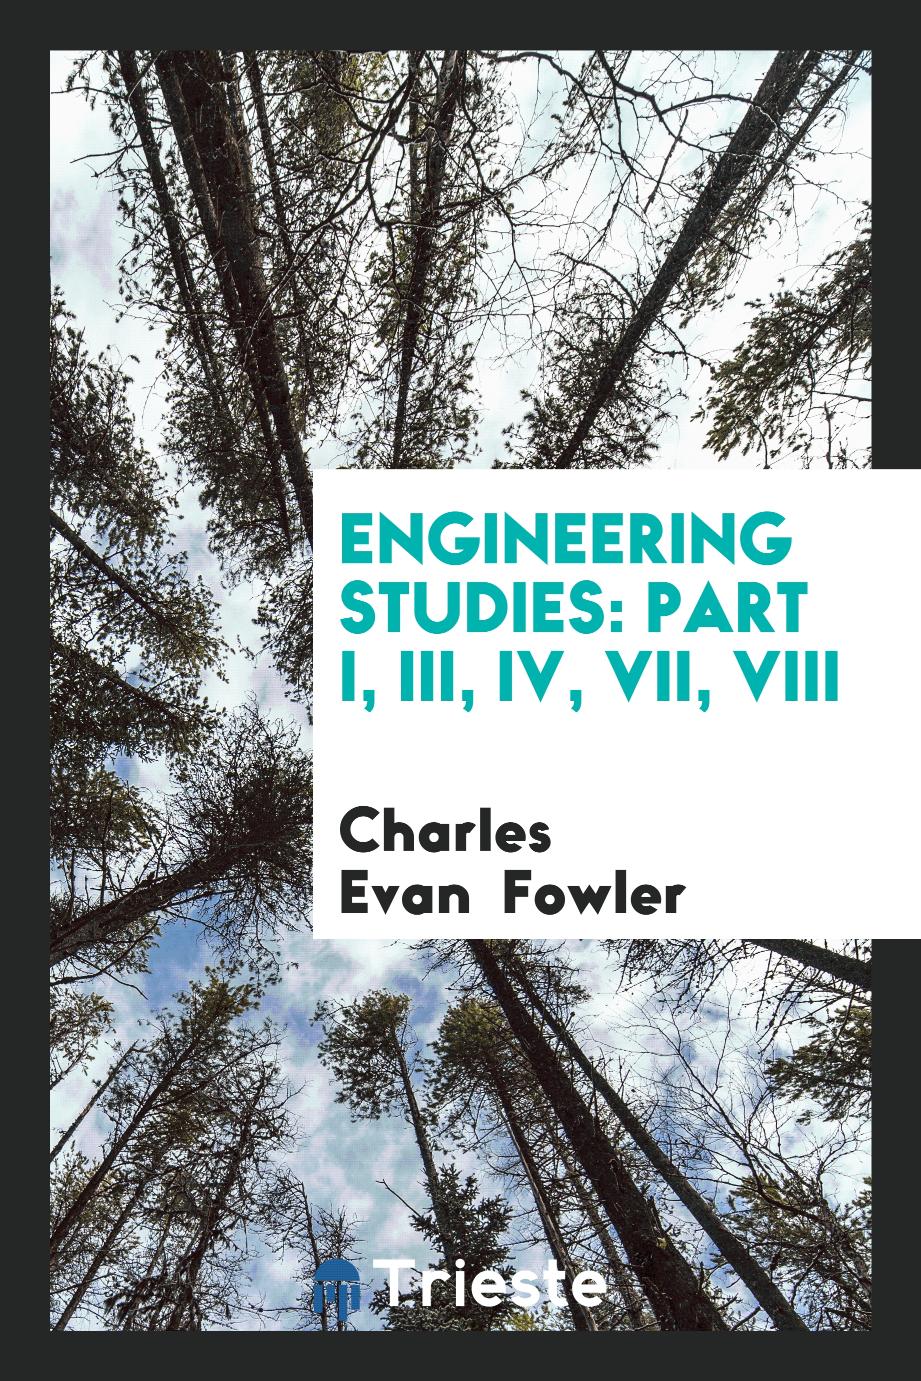 Engineering Studies: Part I, III, IV, VII, VIII